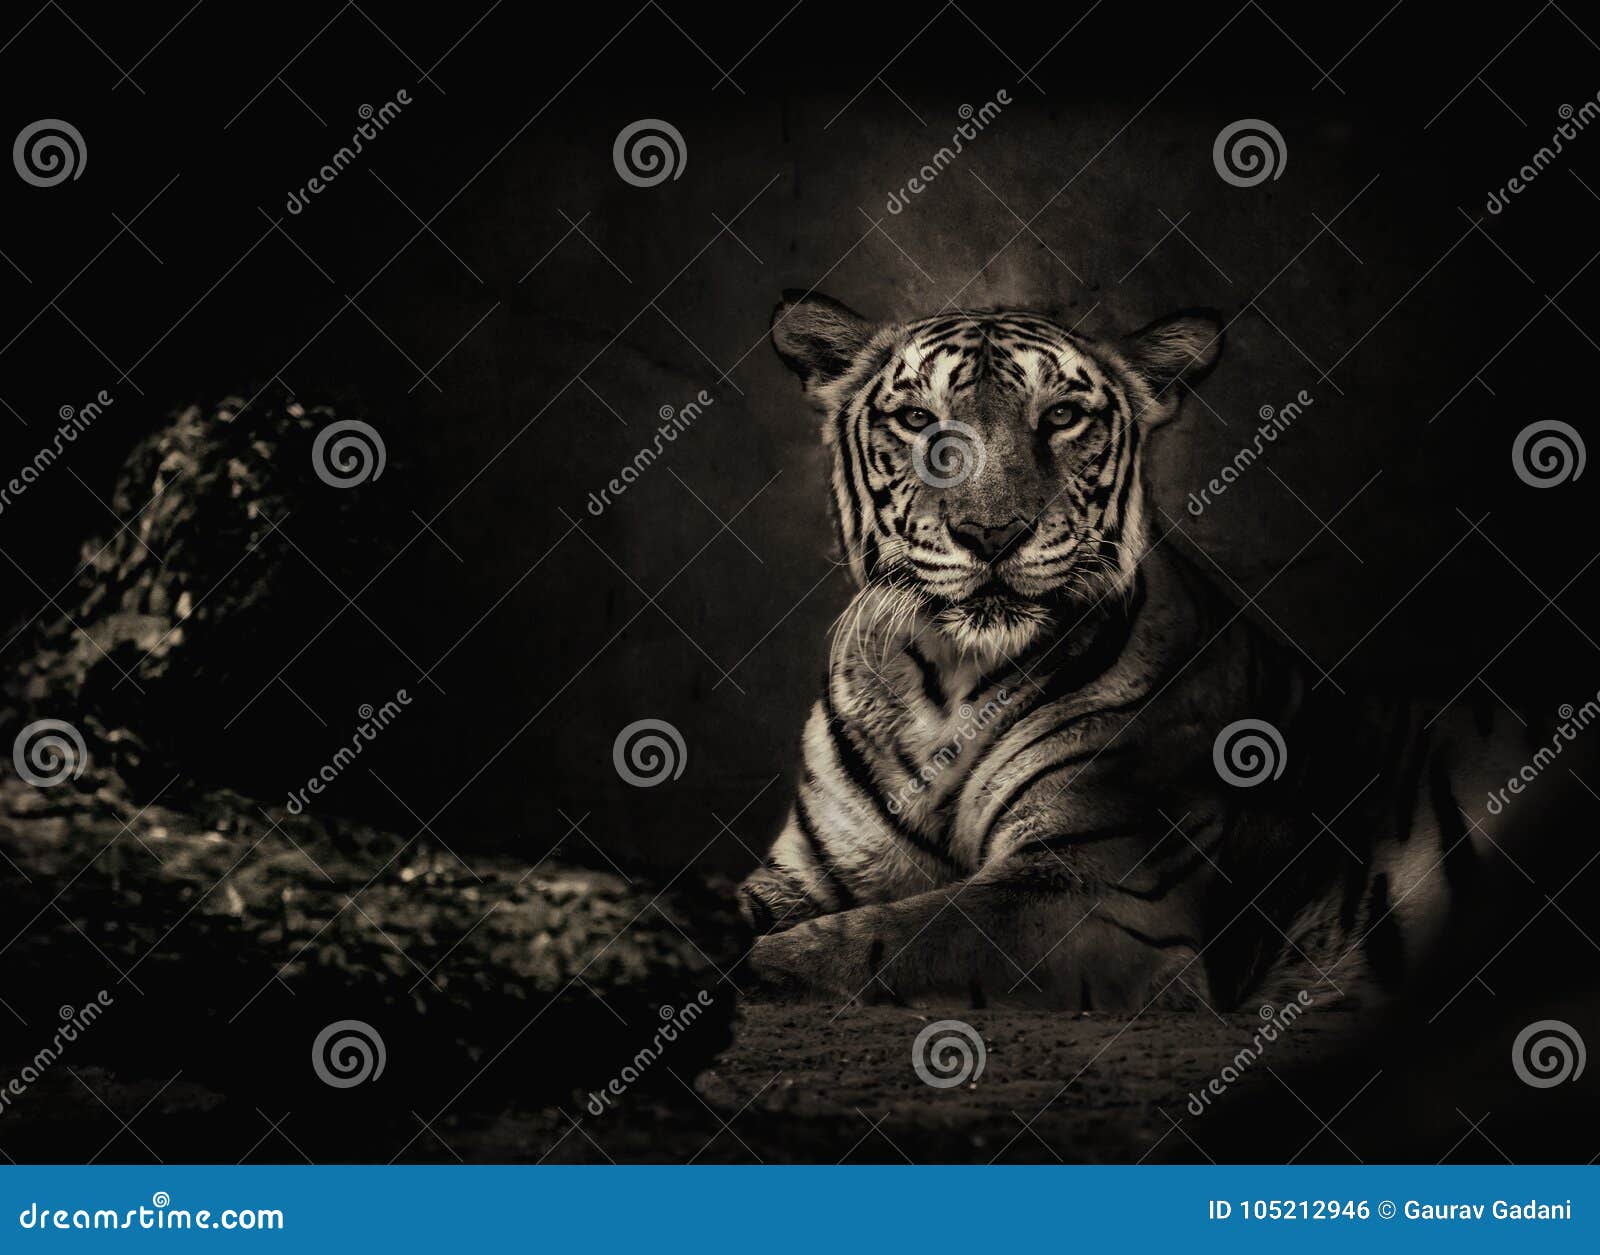 sepia toned bengal tiger looking at the camera